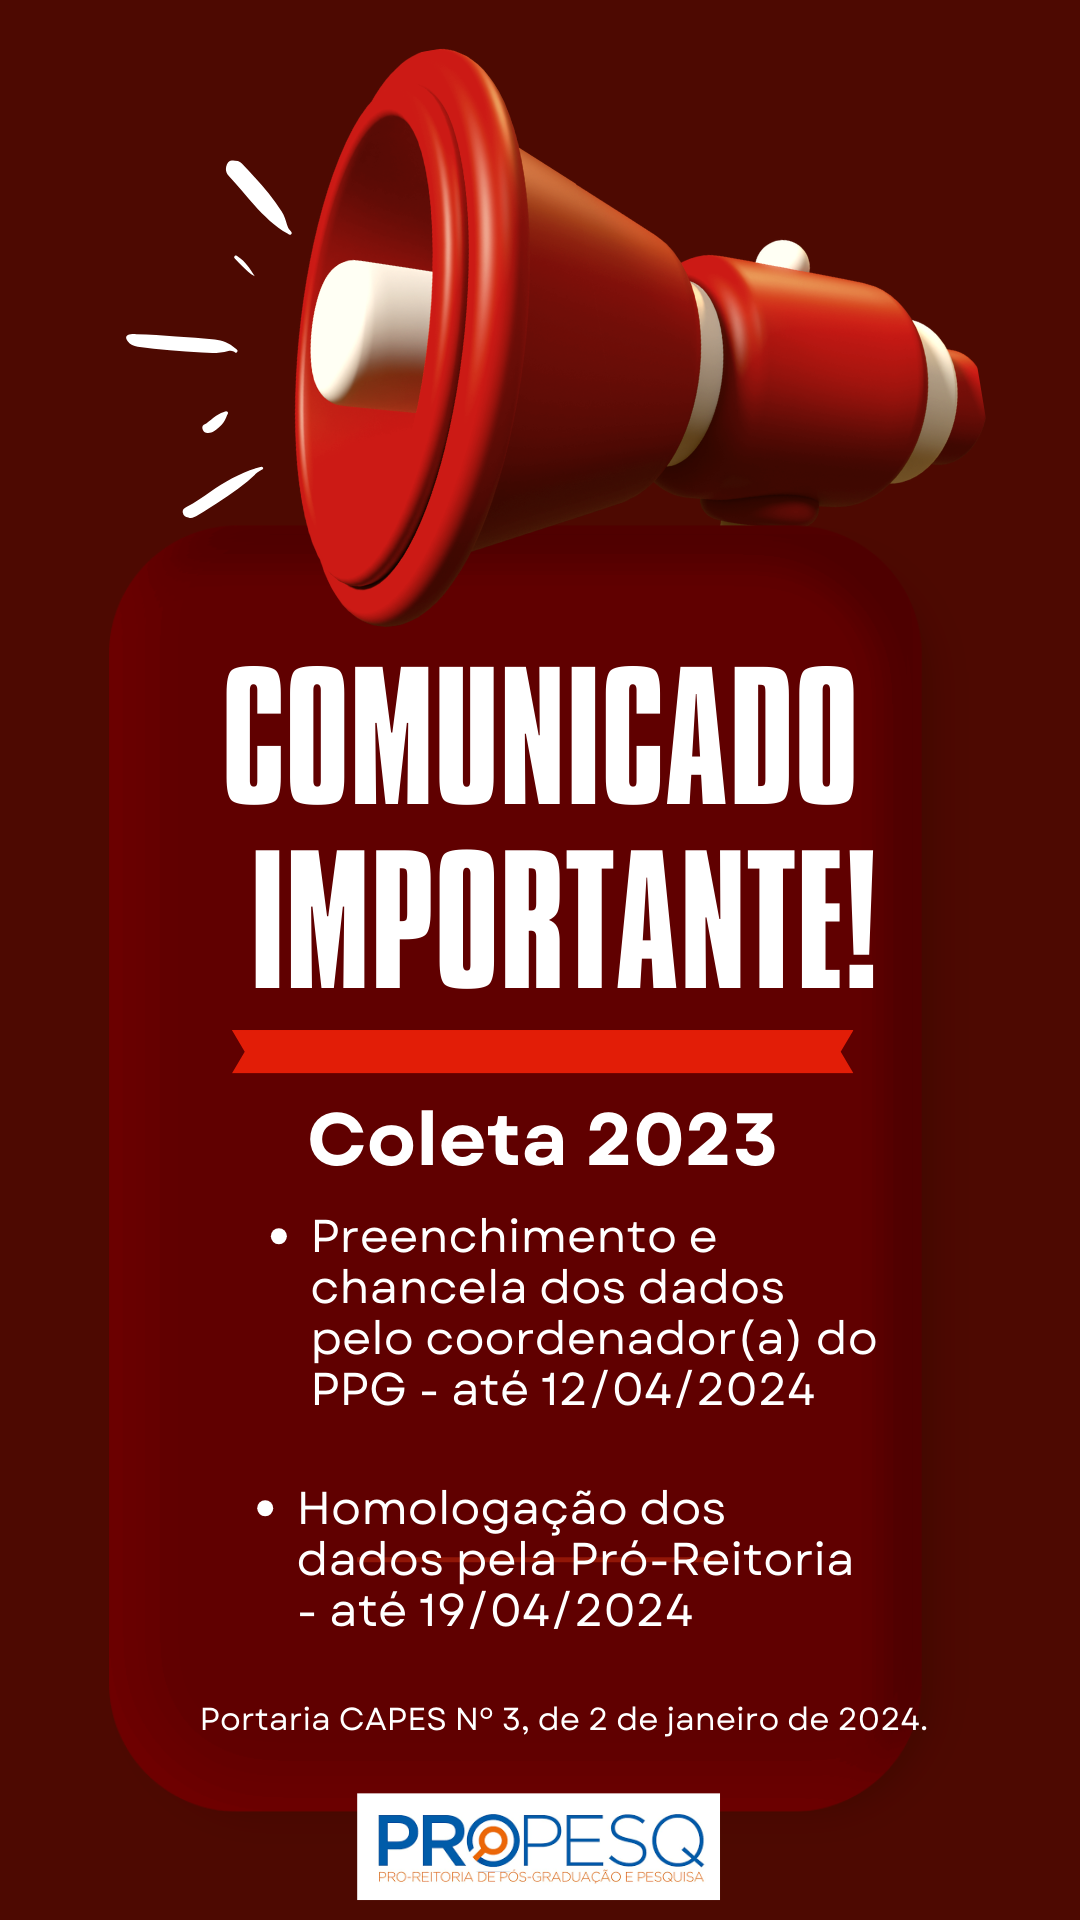 BANNER_PREENCHIMENTO DO COLETA 2023 CAPES_2